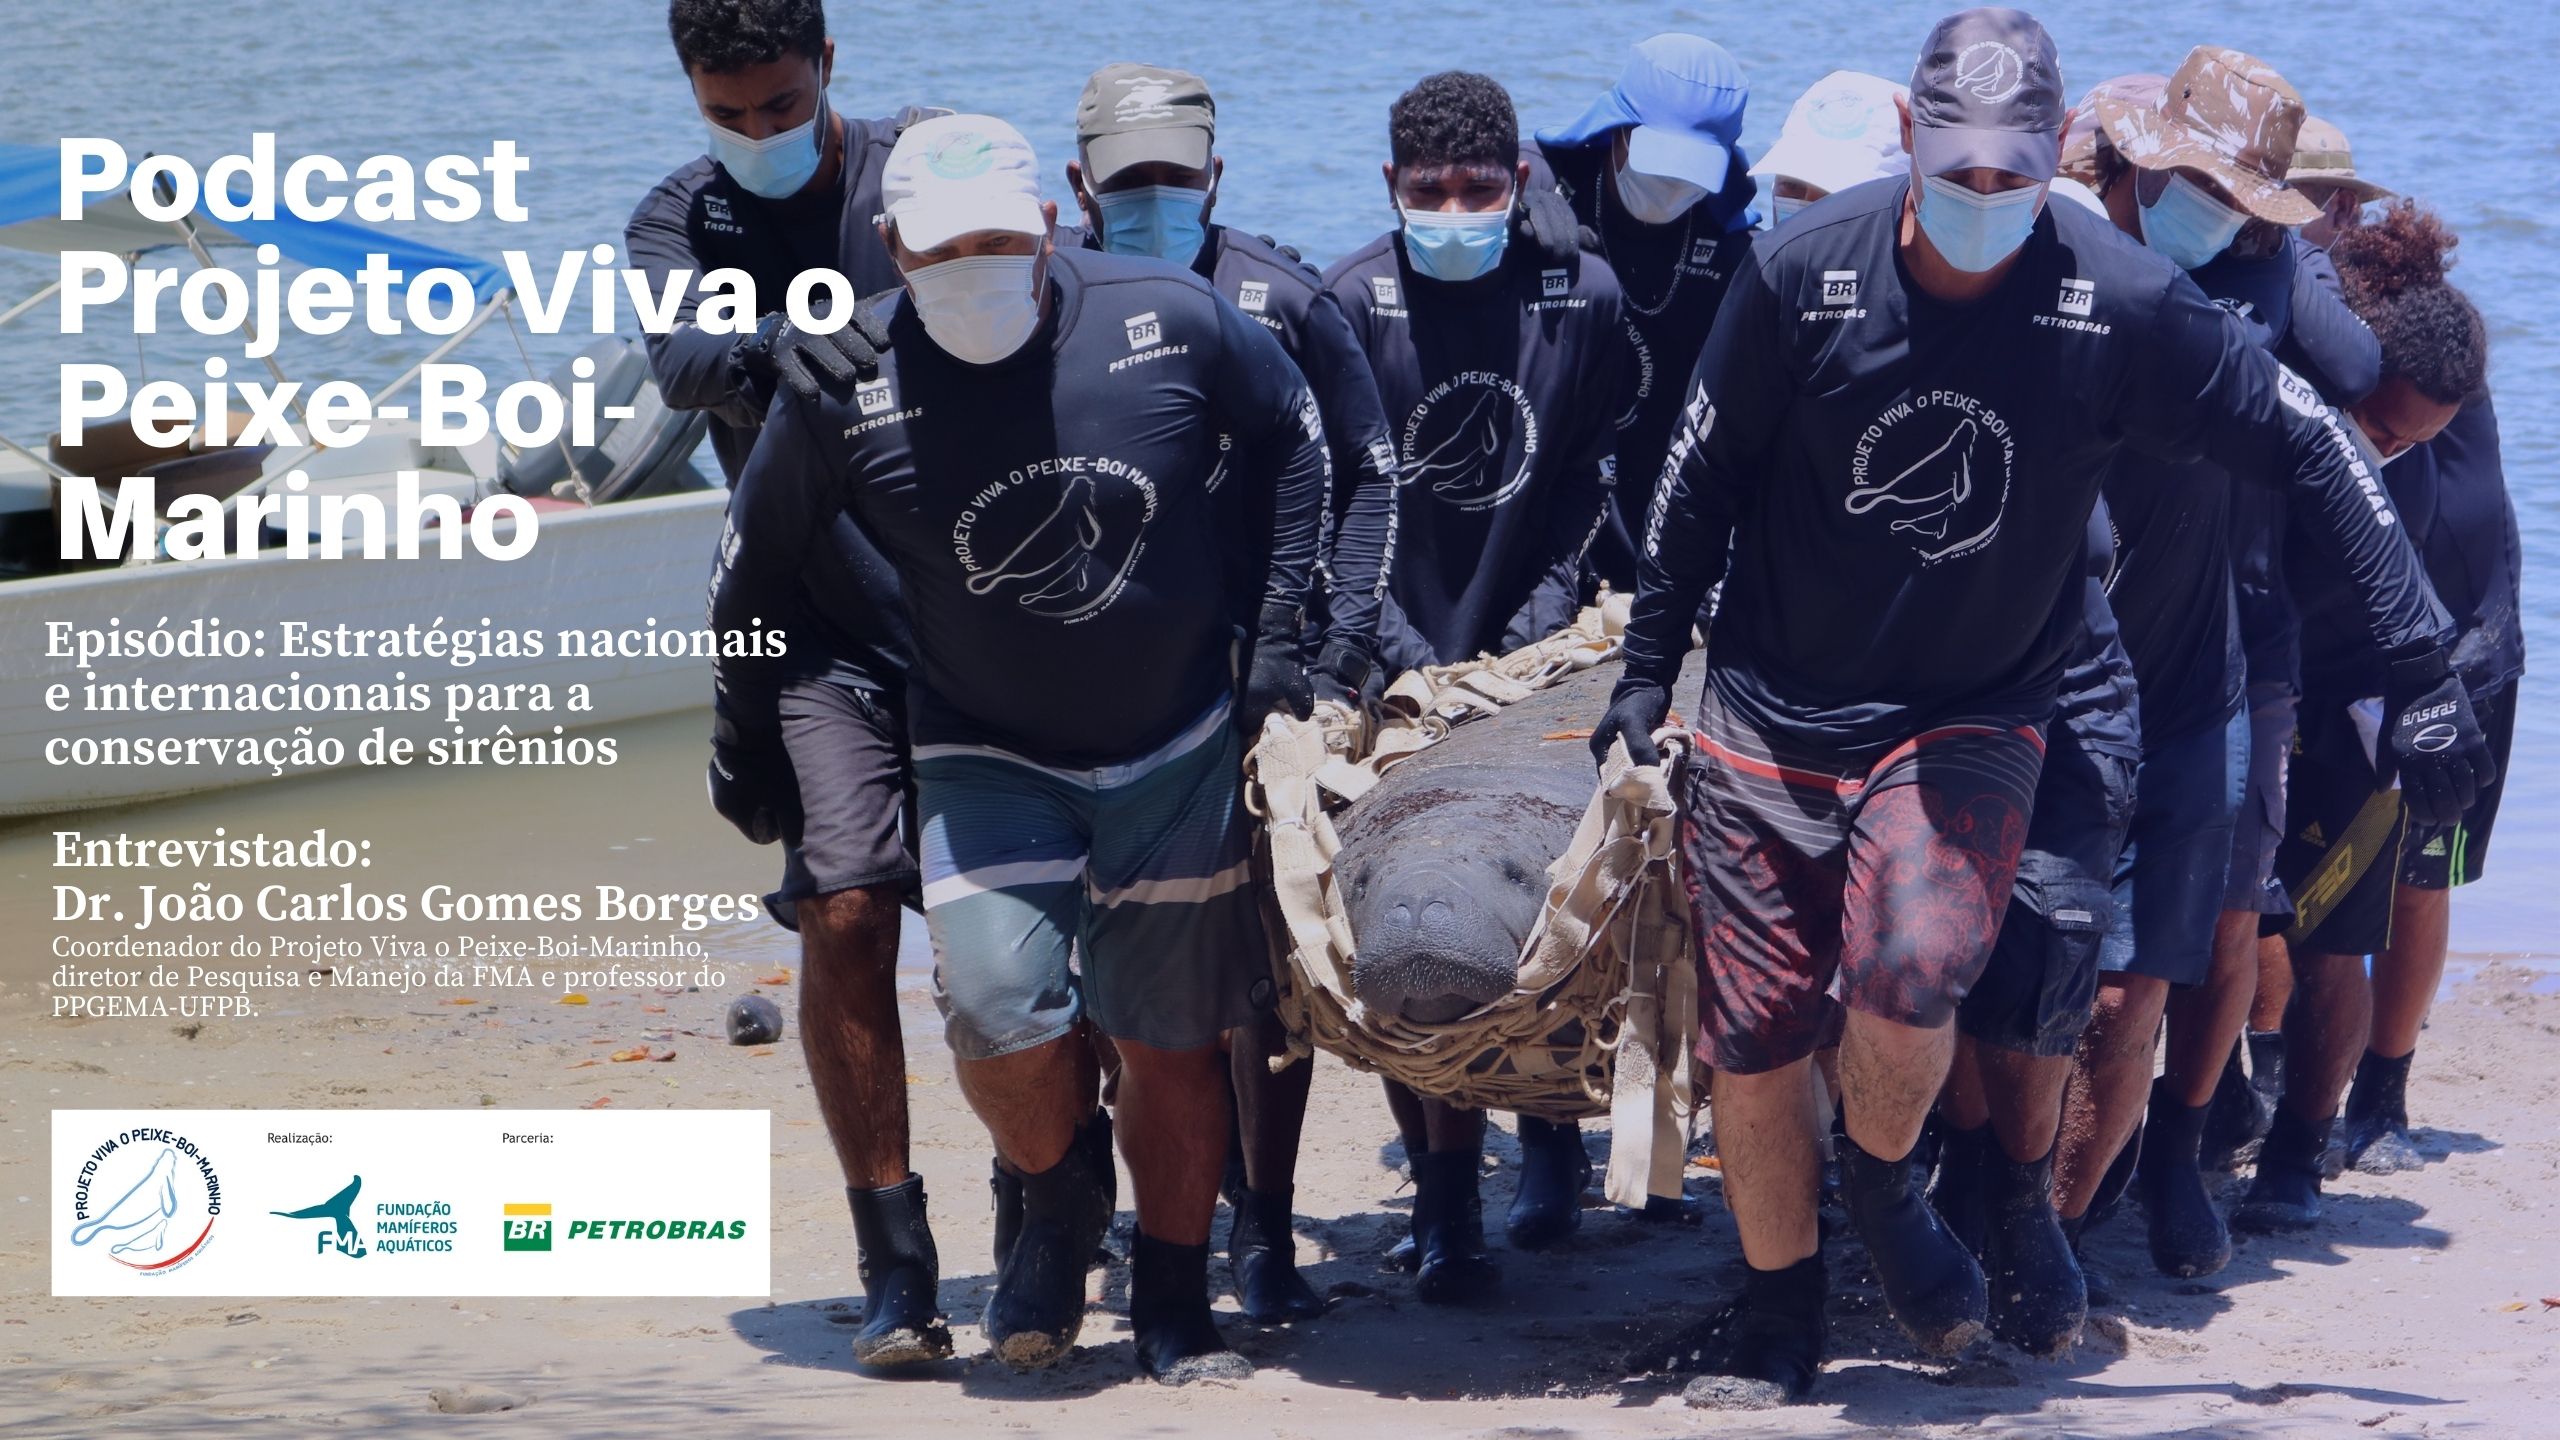 capa de Podcast Projeto Viva o Peixe-Boi-Marinho: Ep 8 - Estratégias nacionais e internacionais para a conservação de sirênios